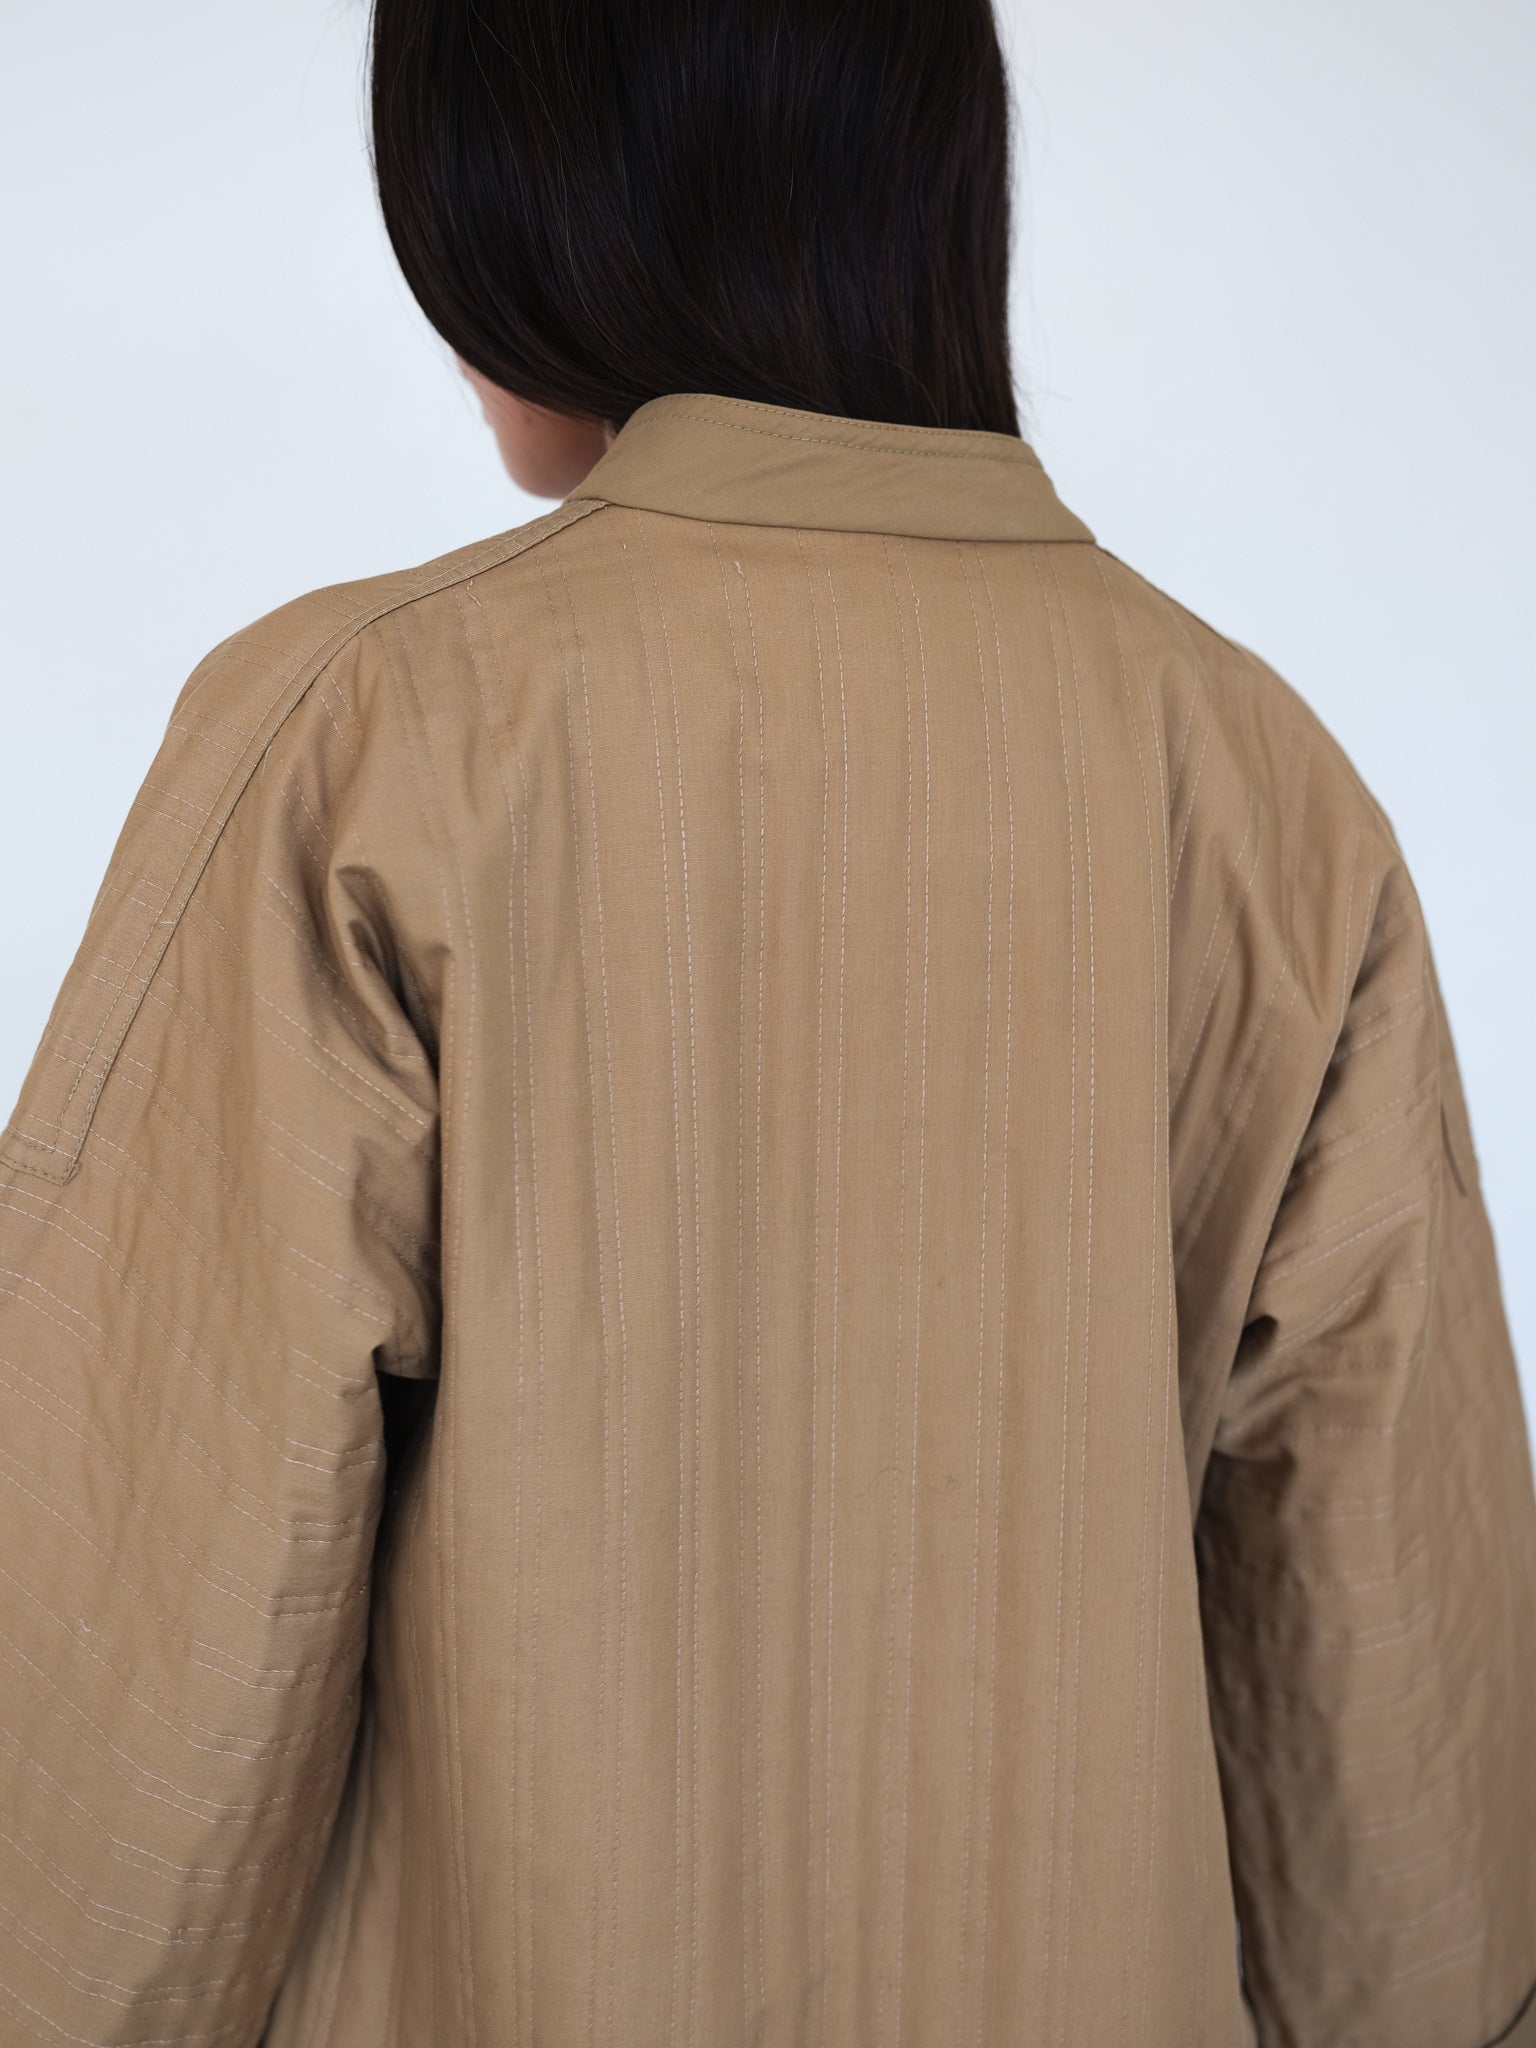 Lanvin kimono jacket